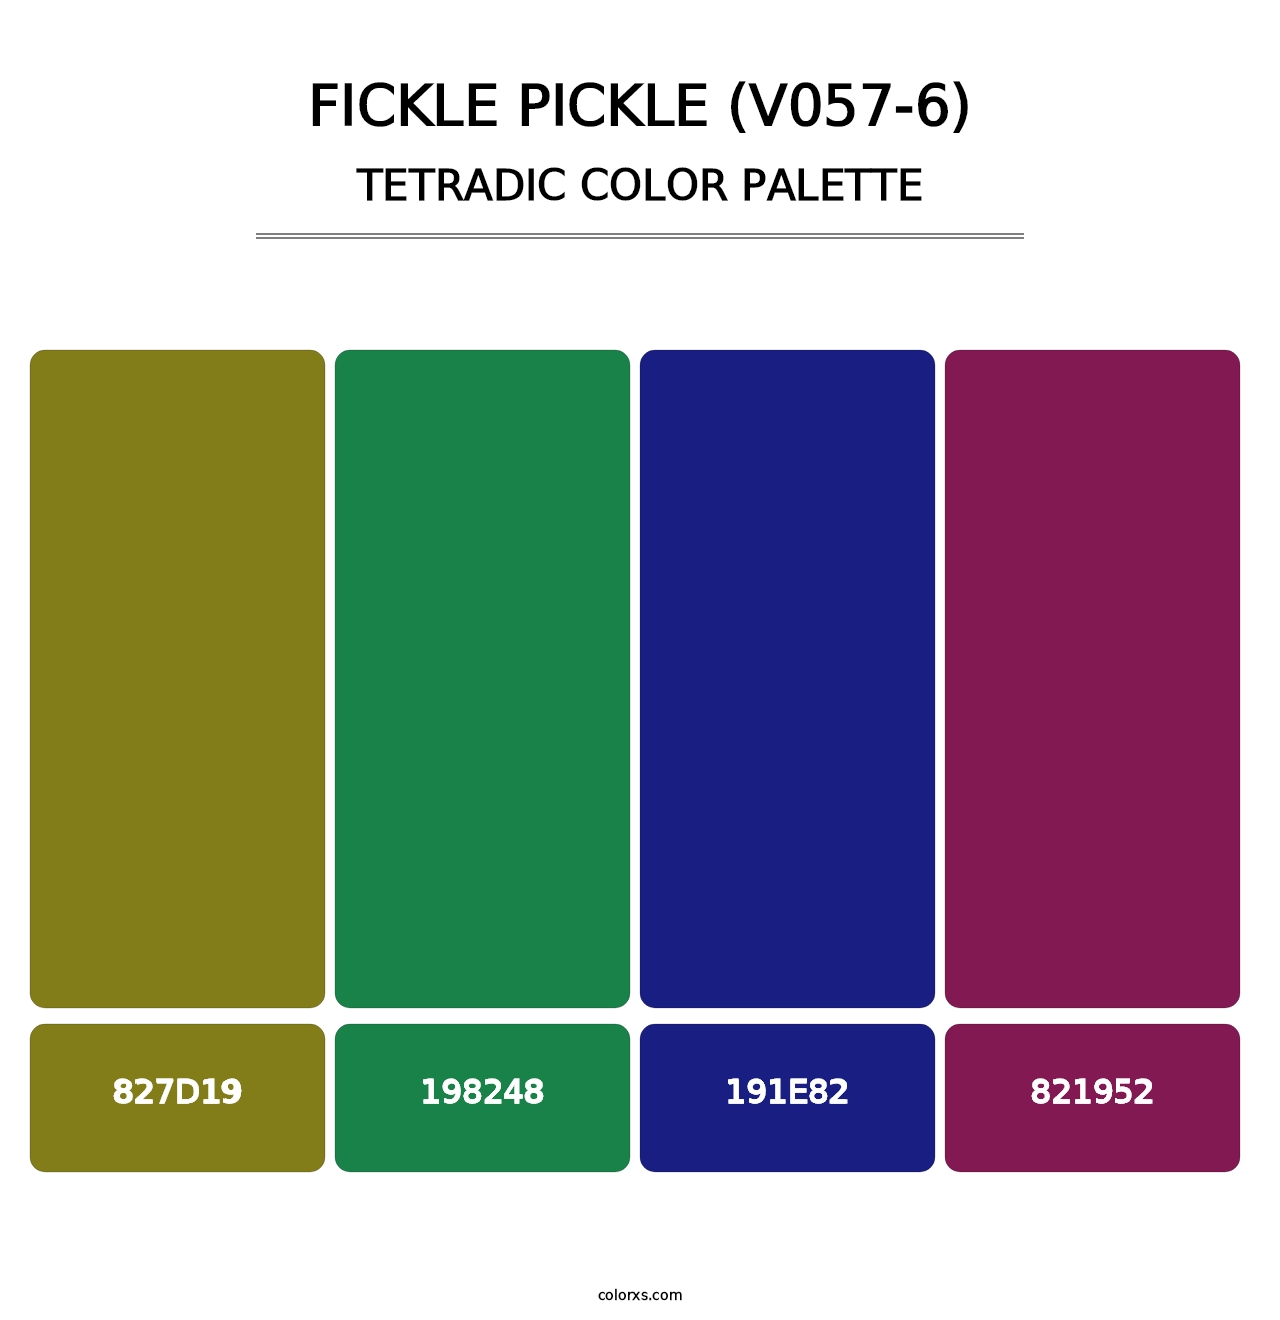 Fickle Pickle (V057-6) - Tetradic Color Palette